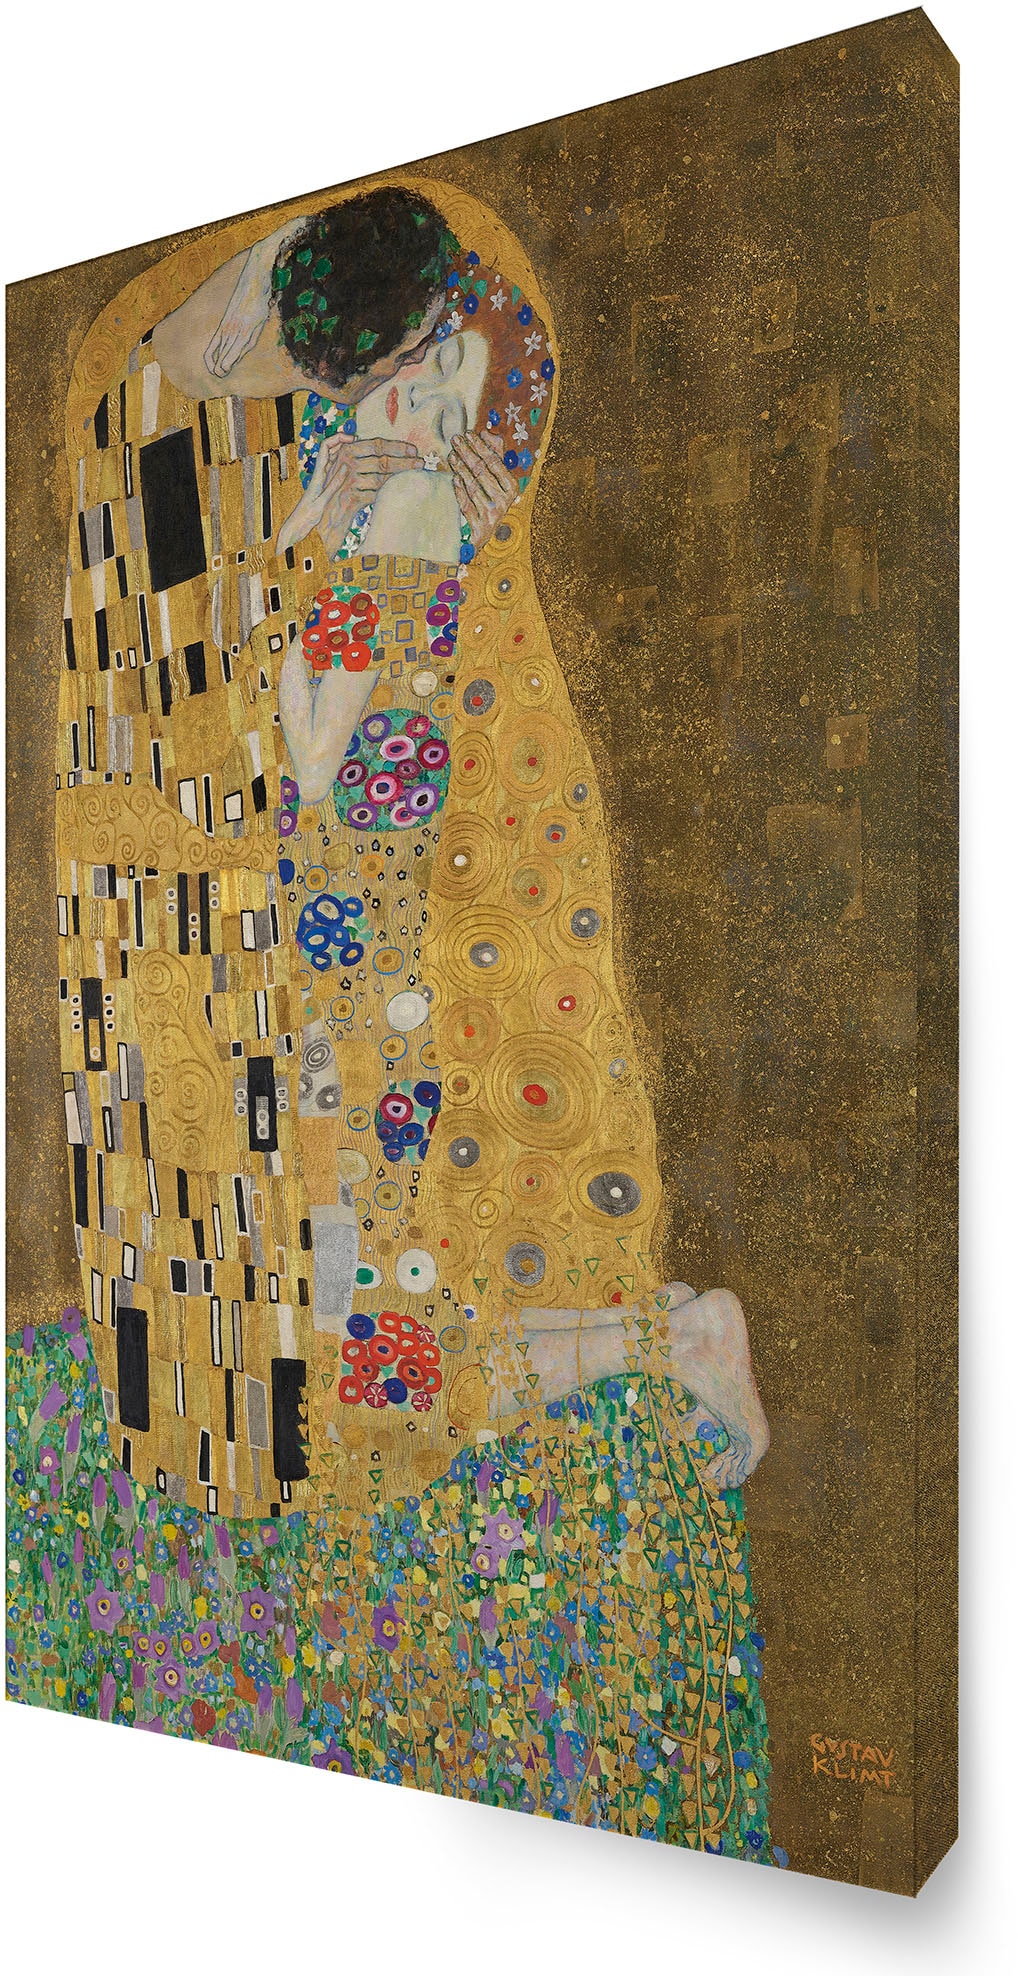 bestellen for (1 home »Kuss (Gustav St.) Leinwandbild | Art BAUR Klimt)«, the